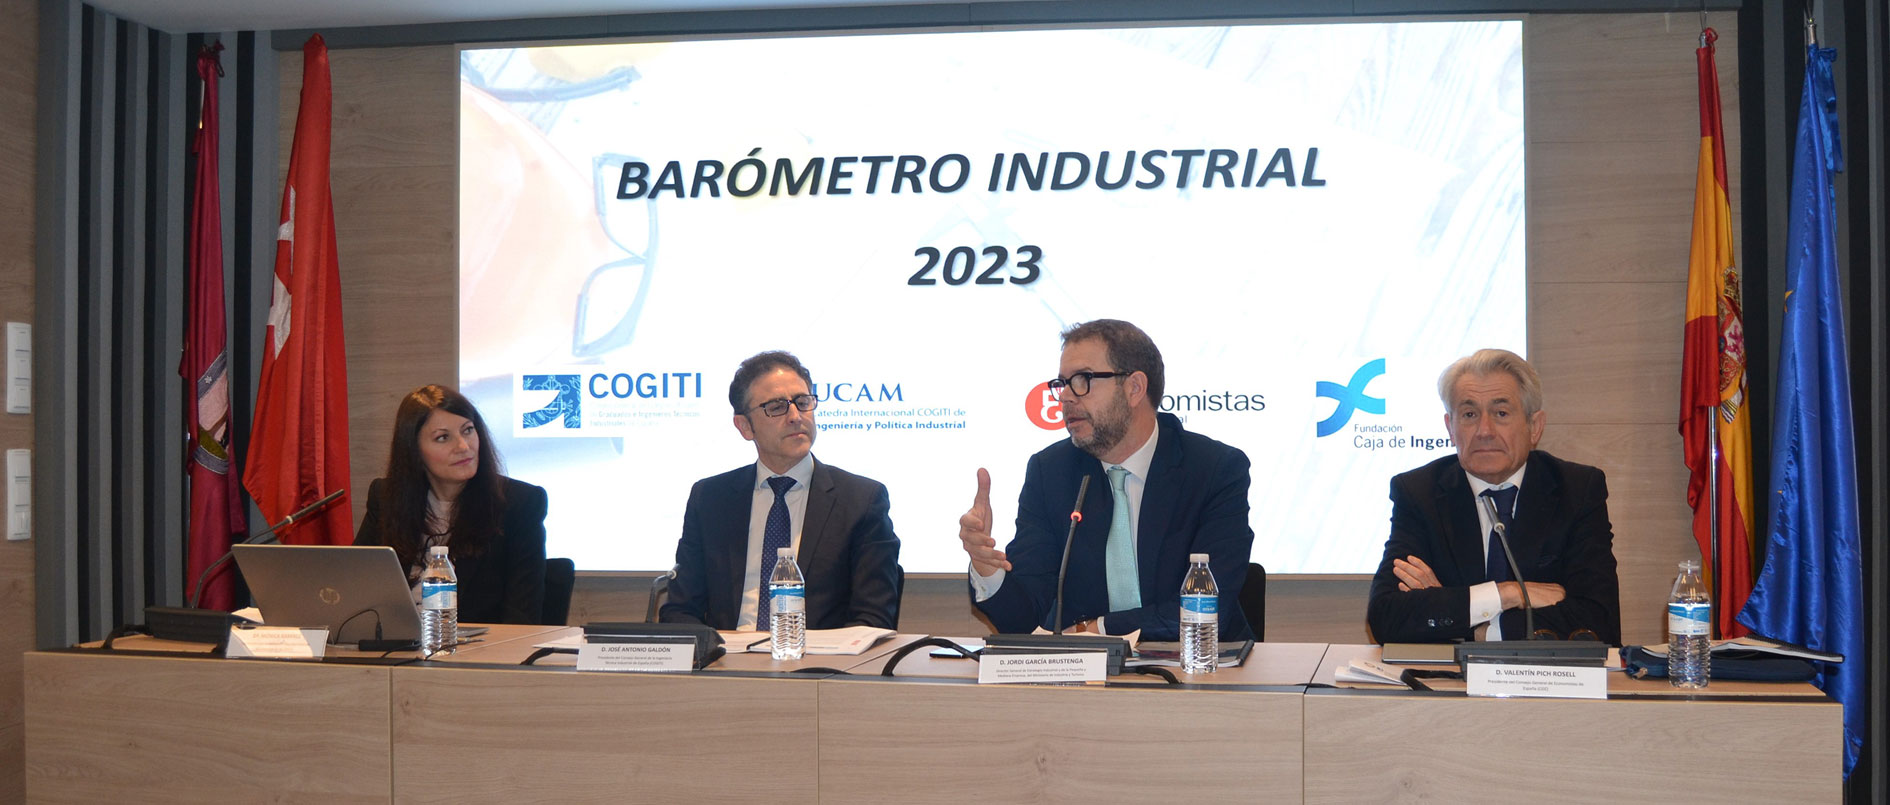 Barómetro Industrial 2023. El 74% del sector considera que el debilitamiento de la industria española se debe a cuestiones estructurales